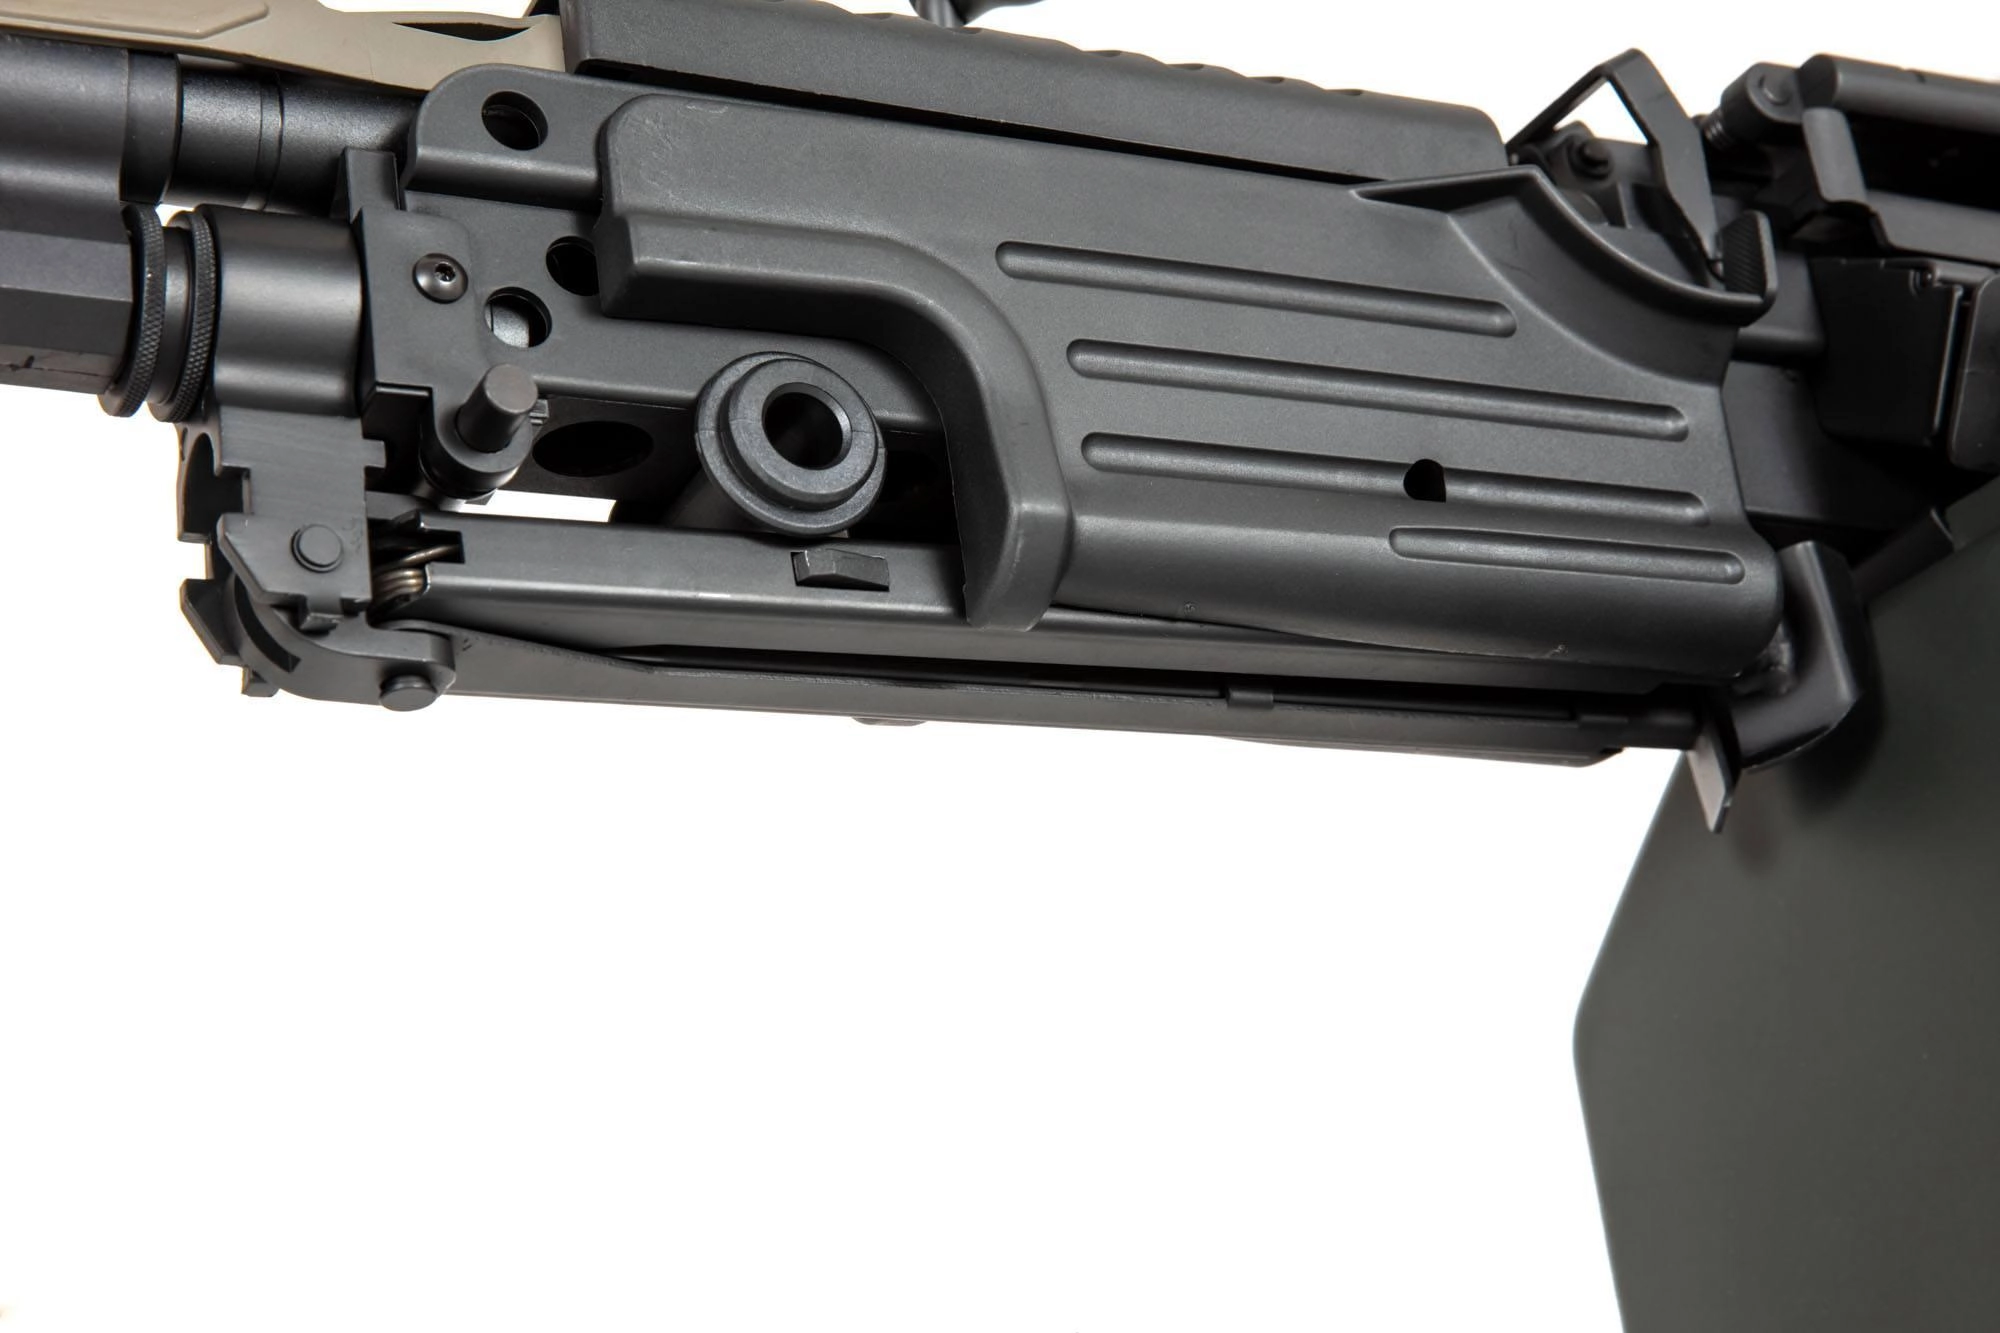 Specna Arms M249 SA-249 MK2 CORE AEG konekivääri - musta